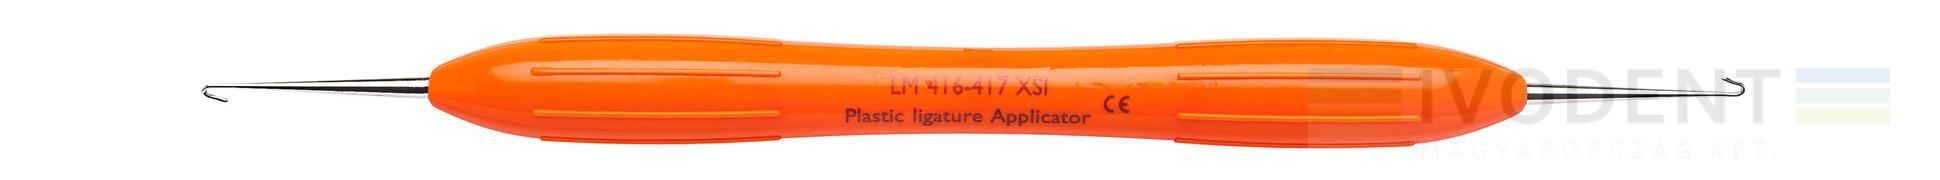 Plastic Ligature Applicator